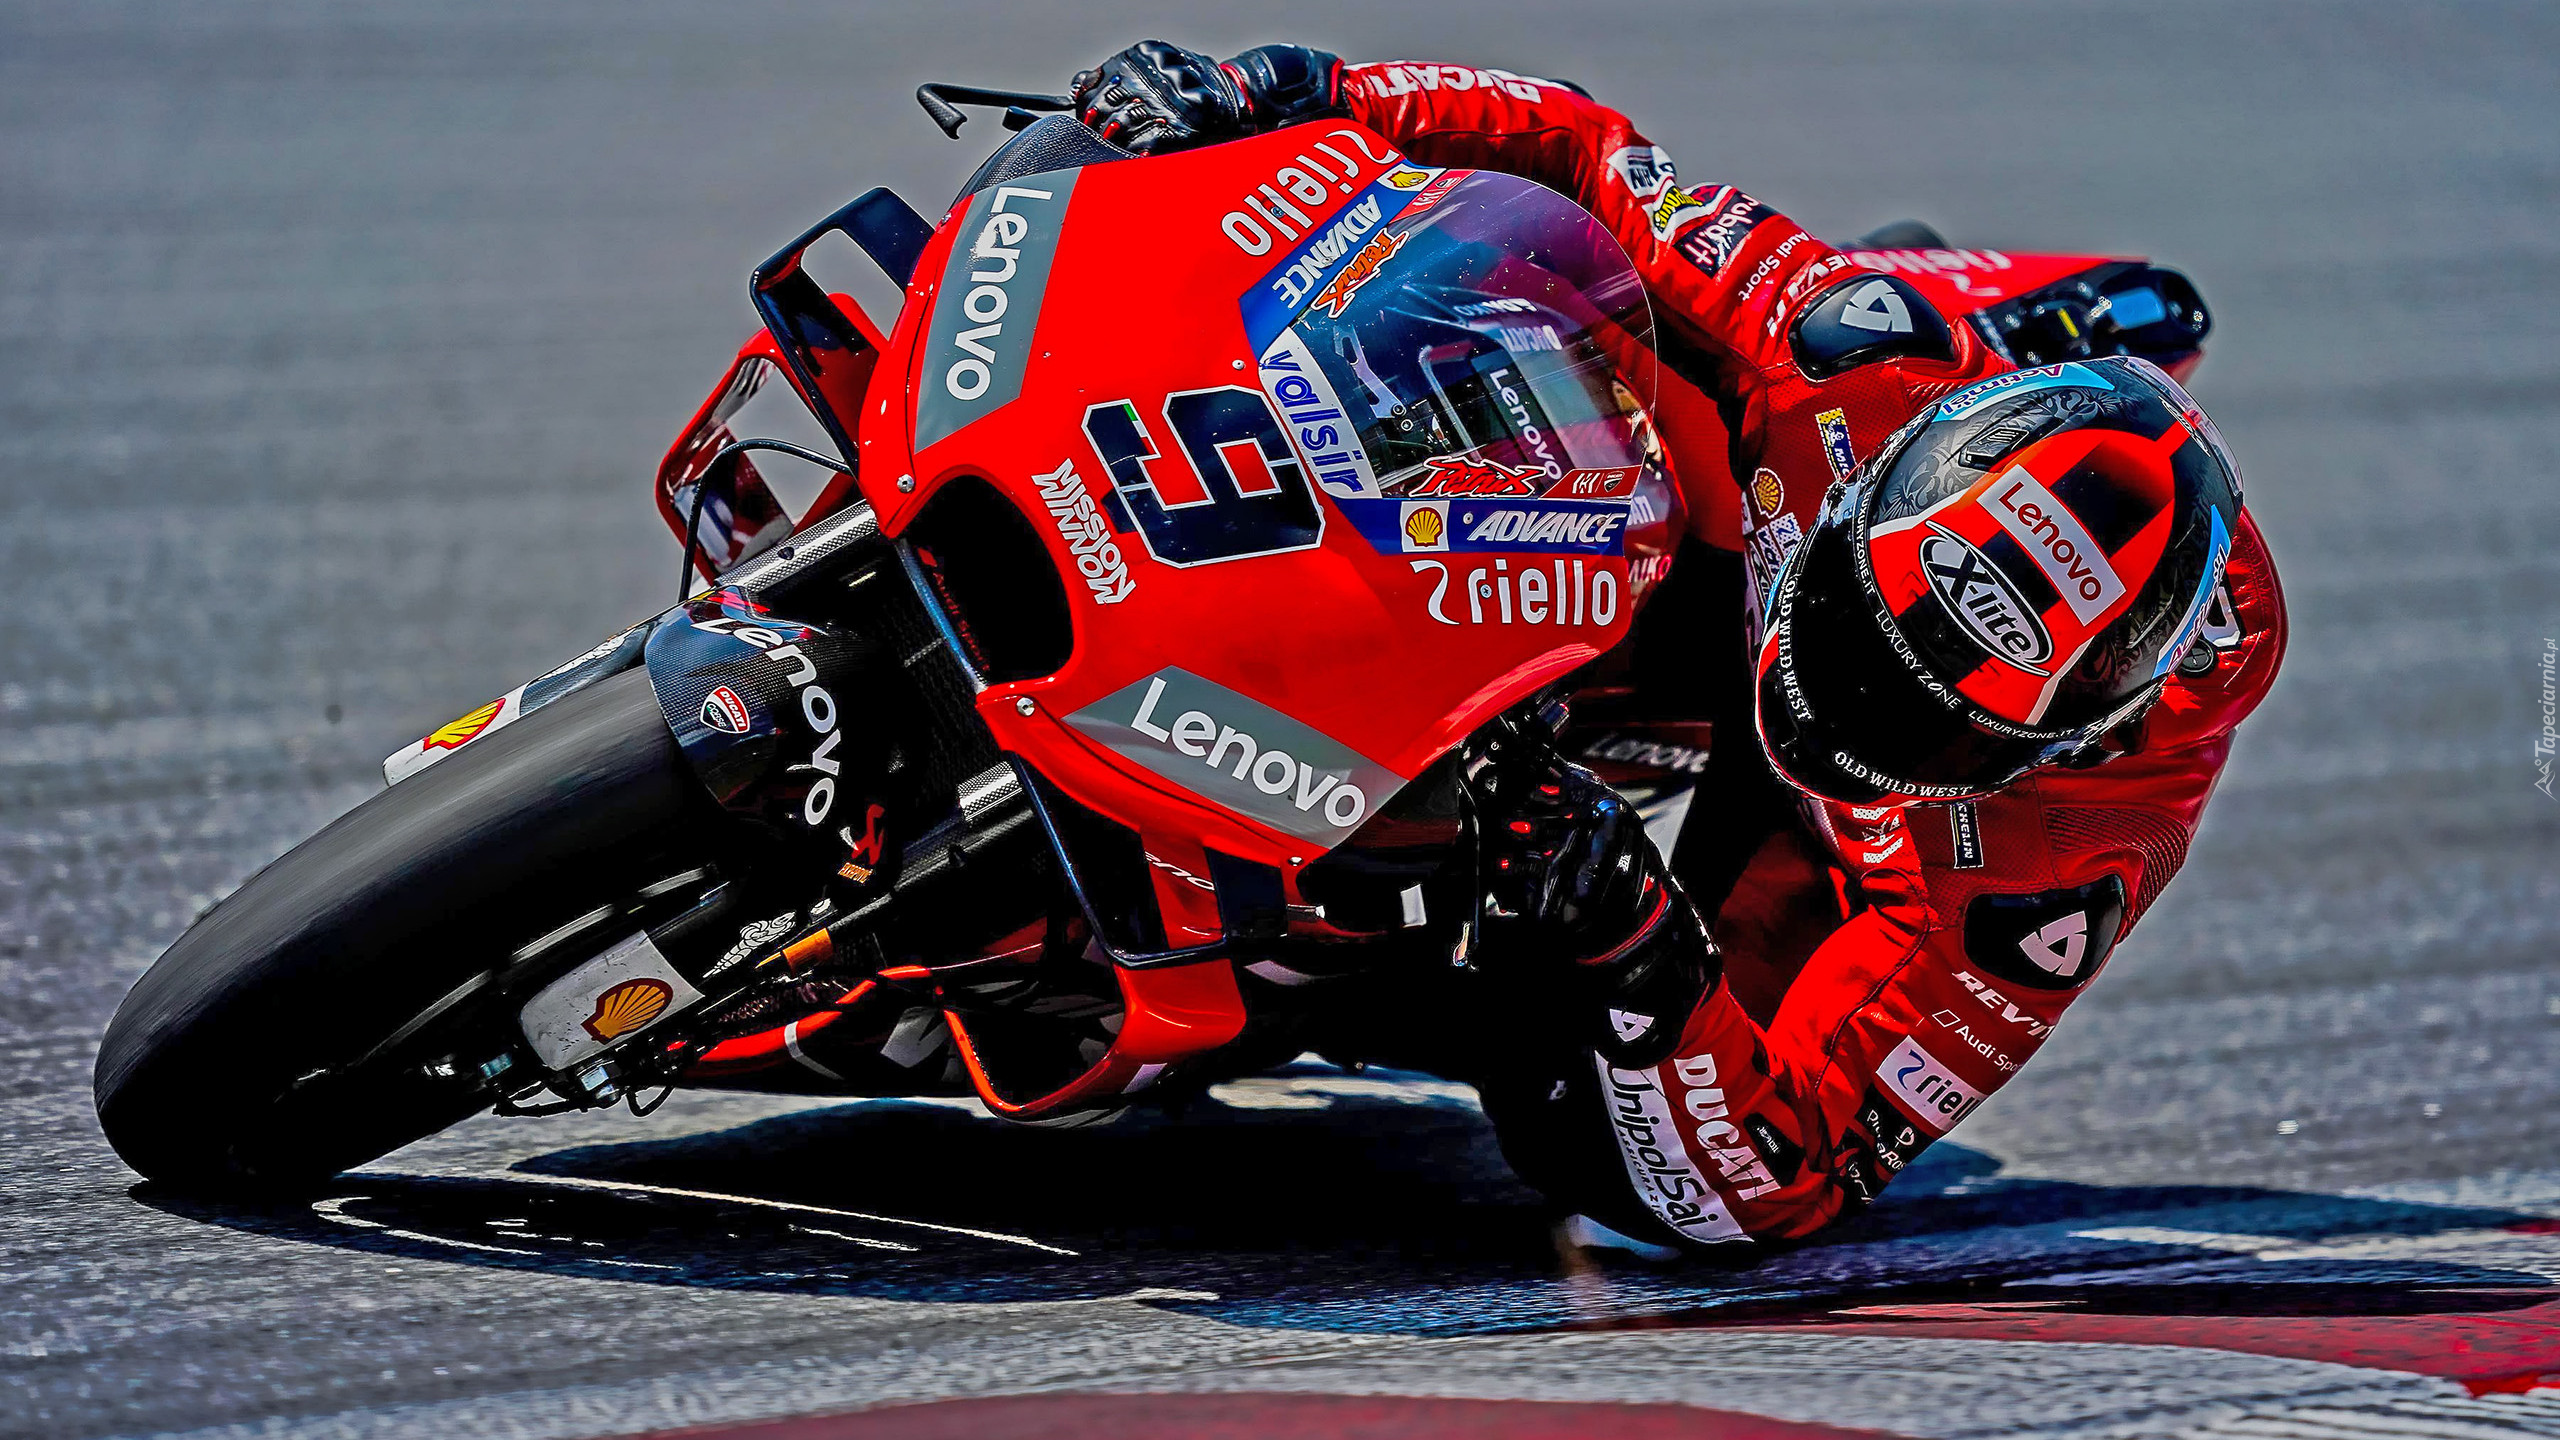 Mistrzostwa, MotoGP, Motocykl, Ducati, Wyścig, Danilo Petrucci, Ducati Team 2020